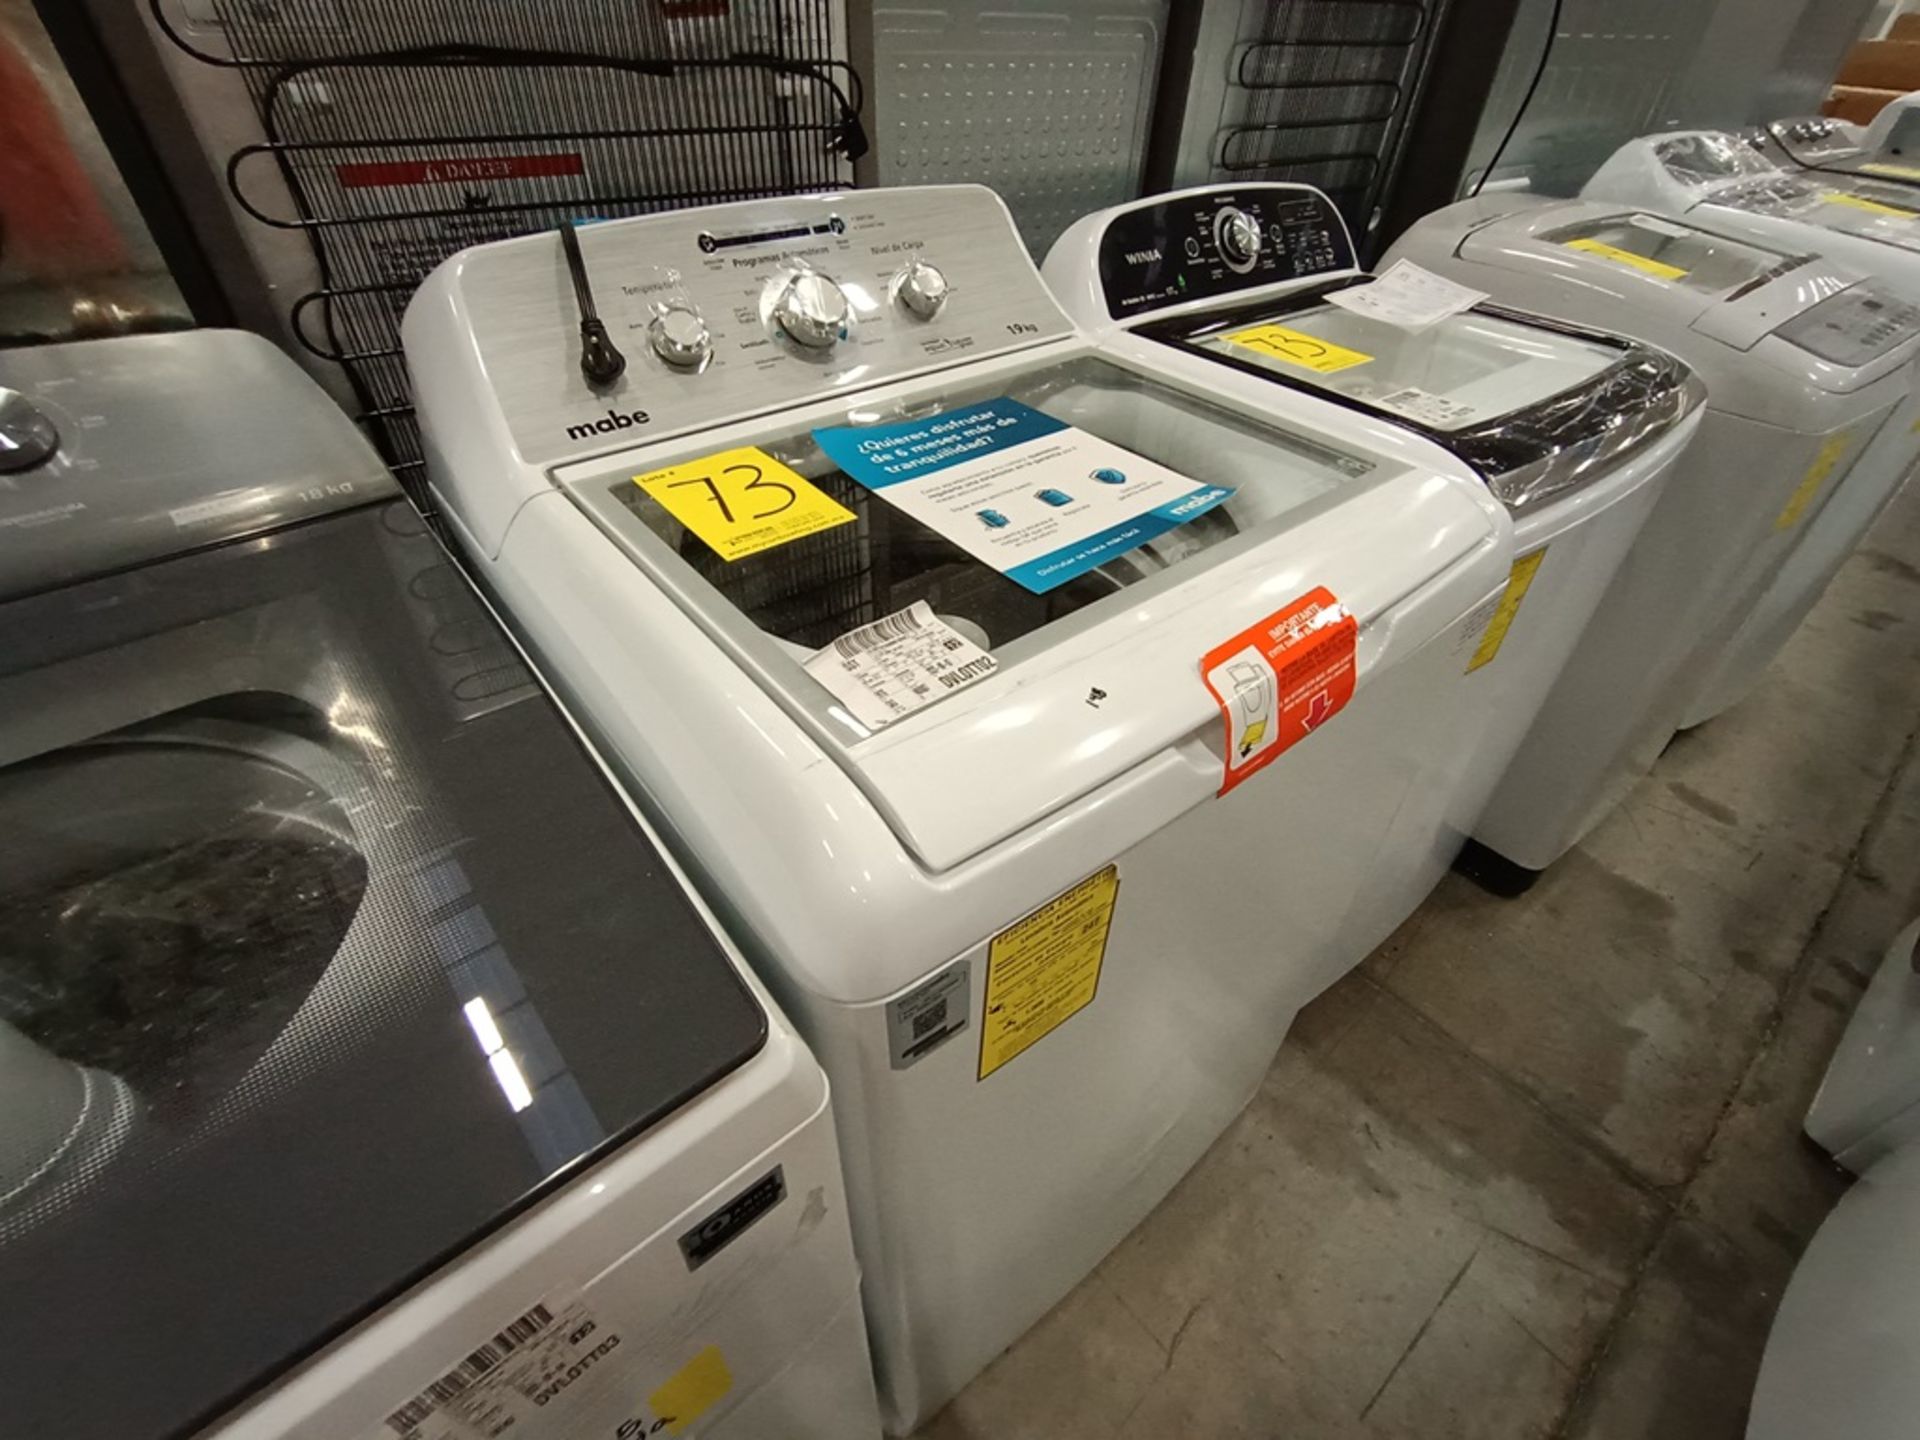 Lote de 2 Lavadoras contiene: 1 lavadora de 19 kg Marca MABE, Modelo LMA79113VBAB03, Serie S73629, - Image 6 of 18